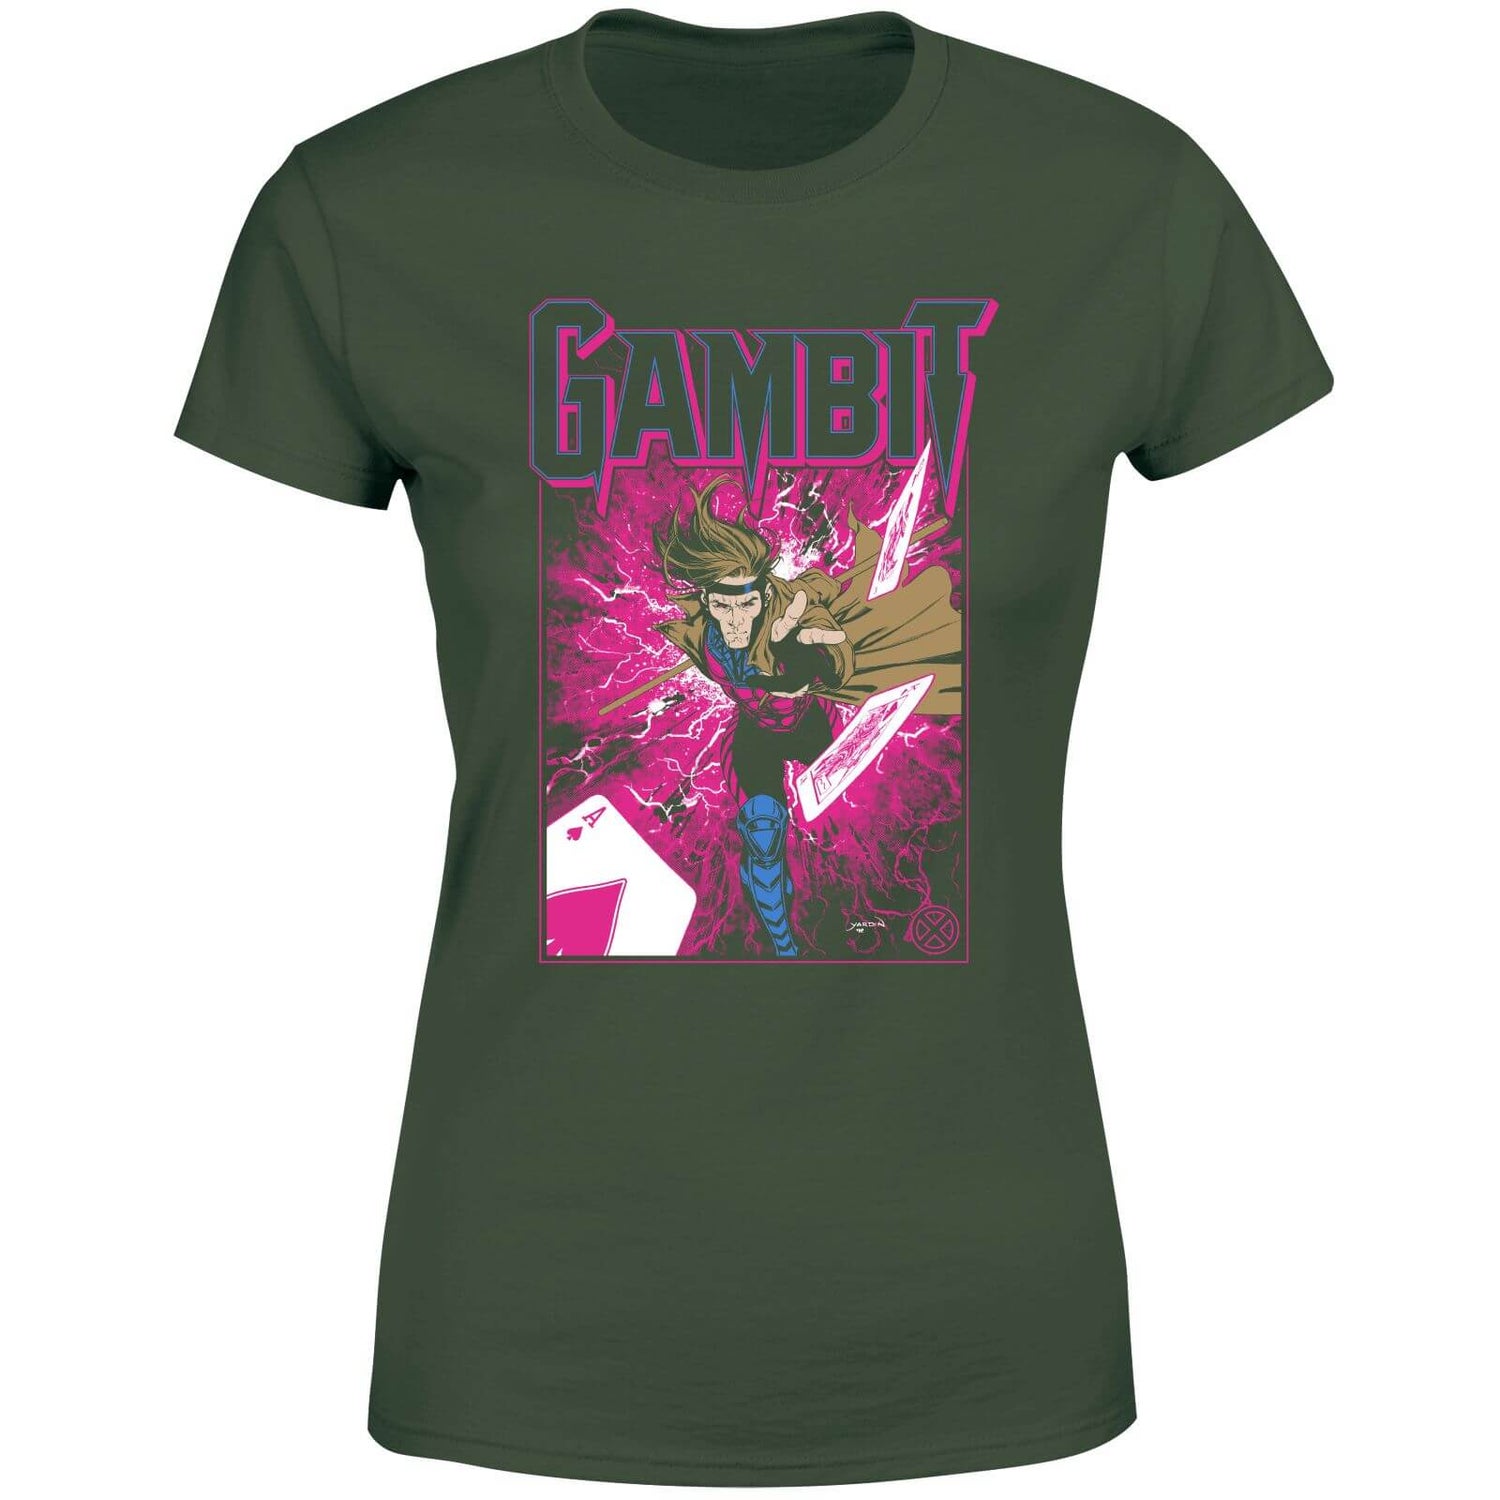 X-Men Gambit Women's T-Shirt - Green